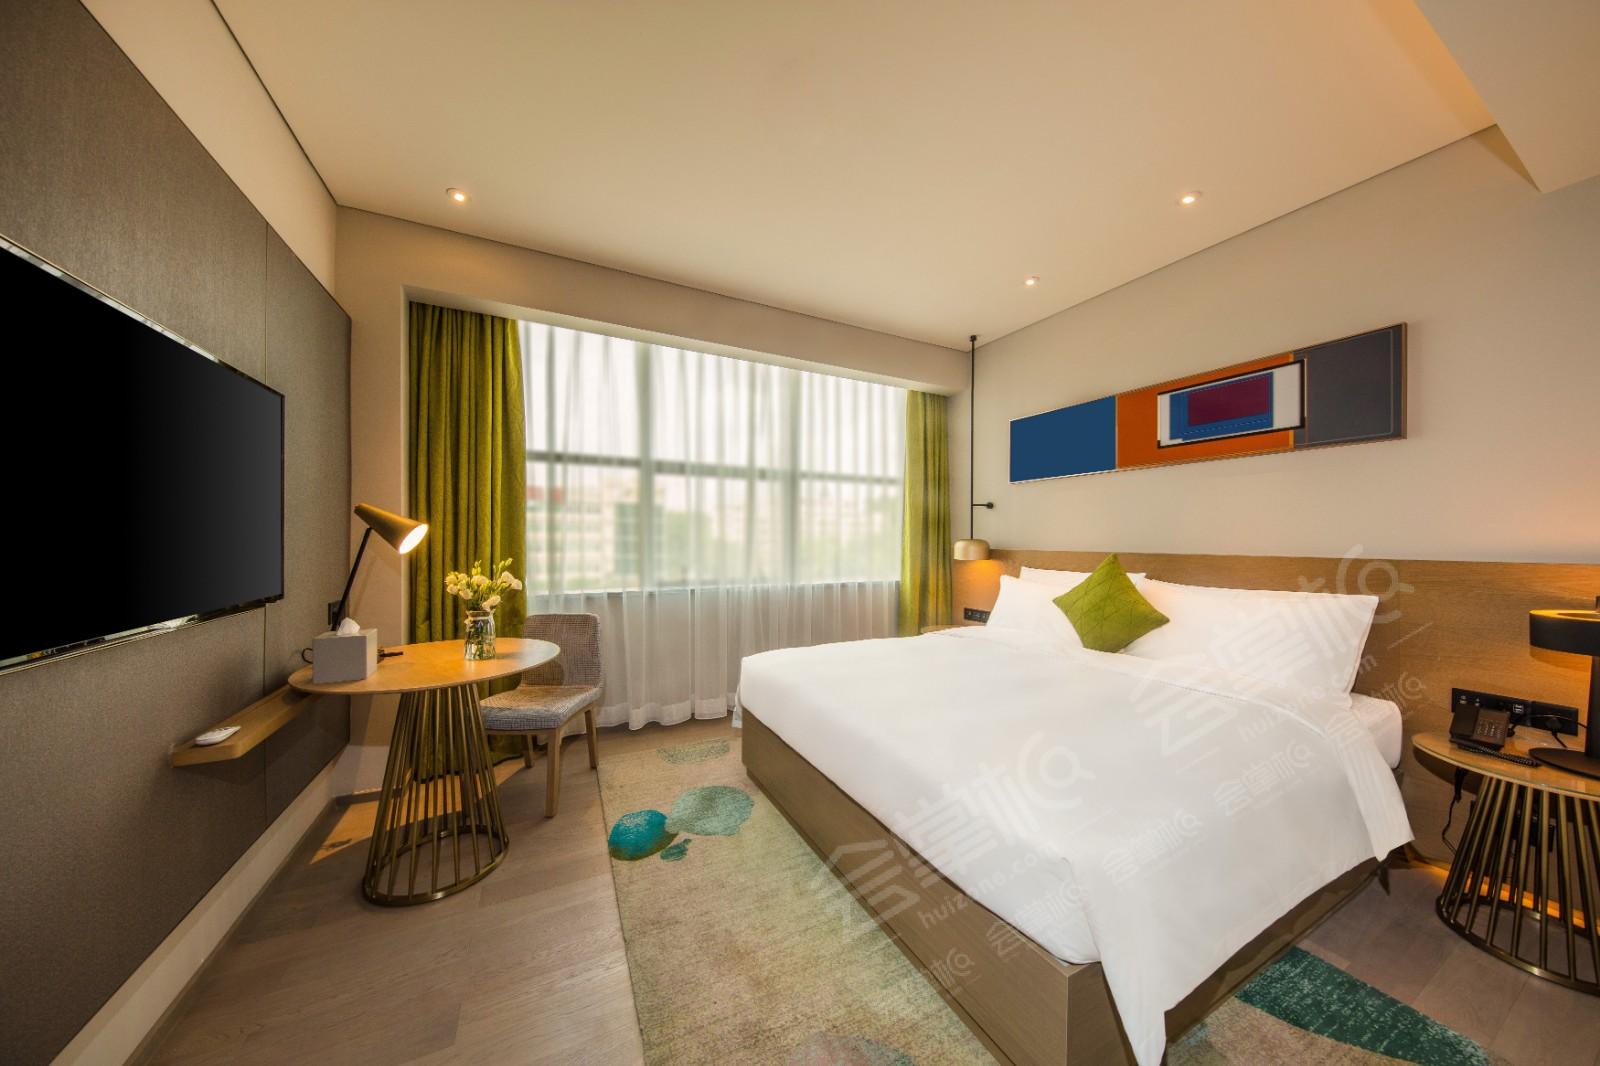 深圳四星级酒店最大容纳300人的会议场地|深圳坂田木莲庄酒店的价格与联系方式